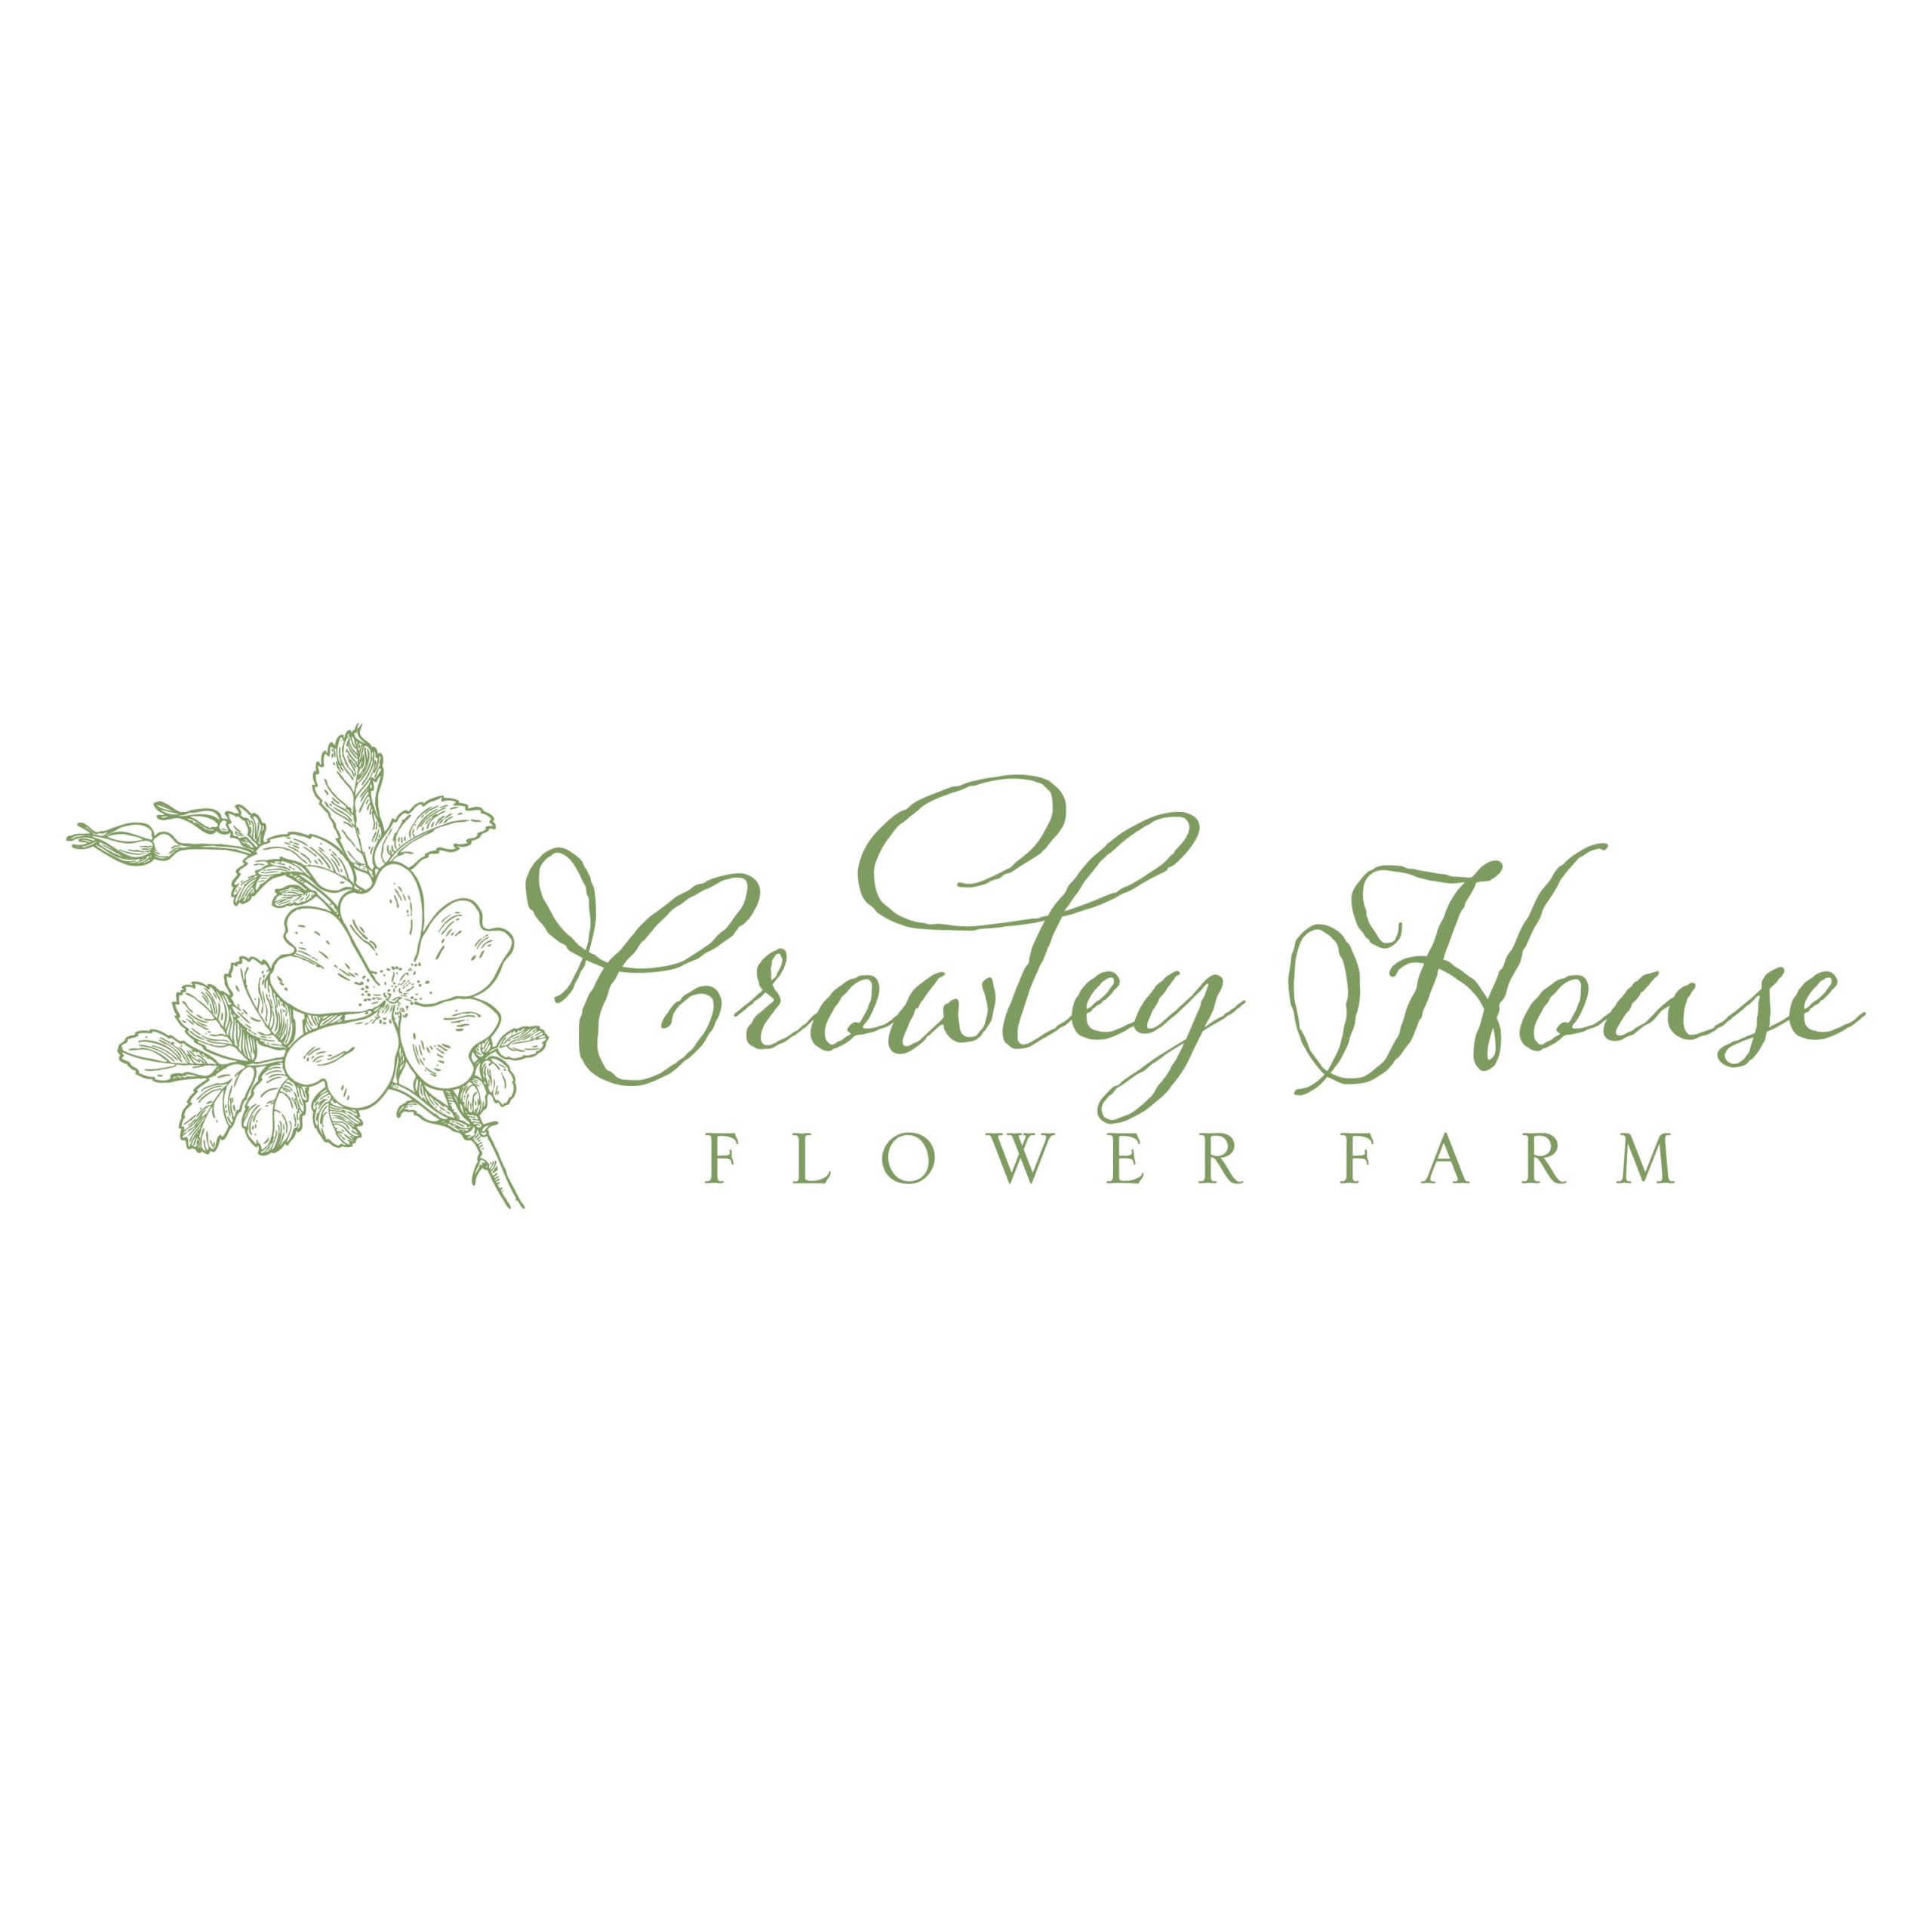 Crowley House Flower Farm